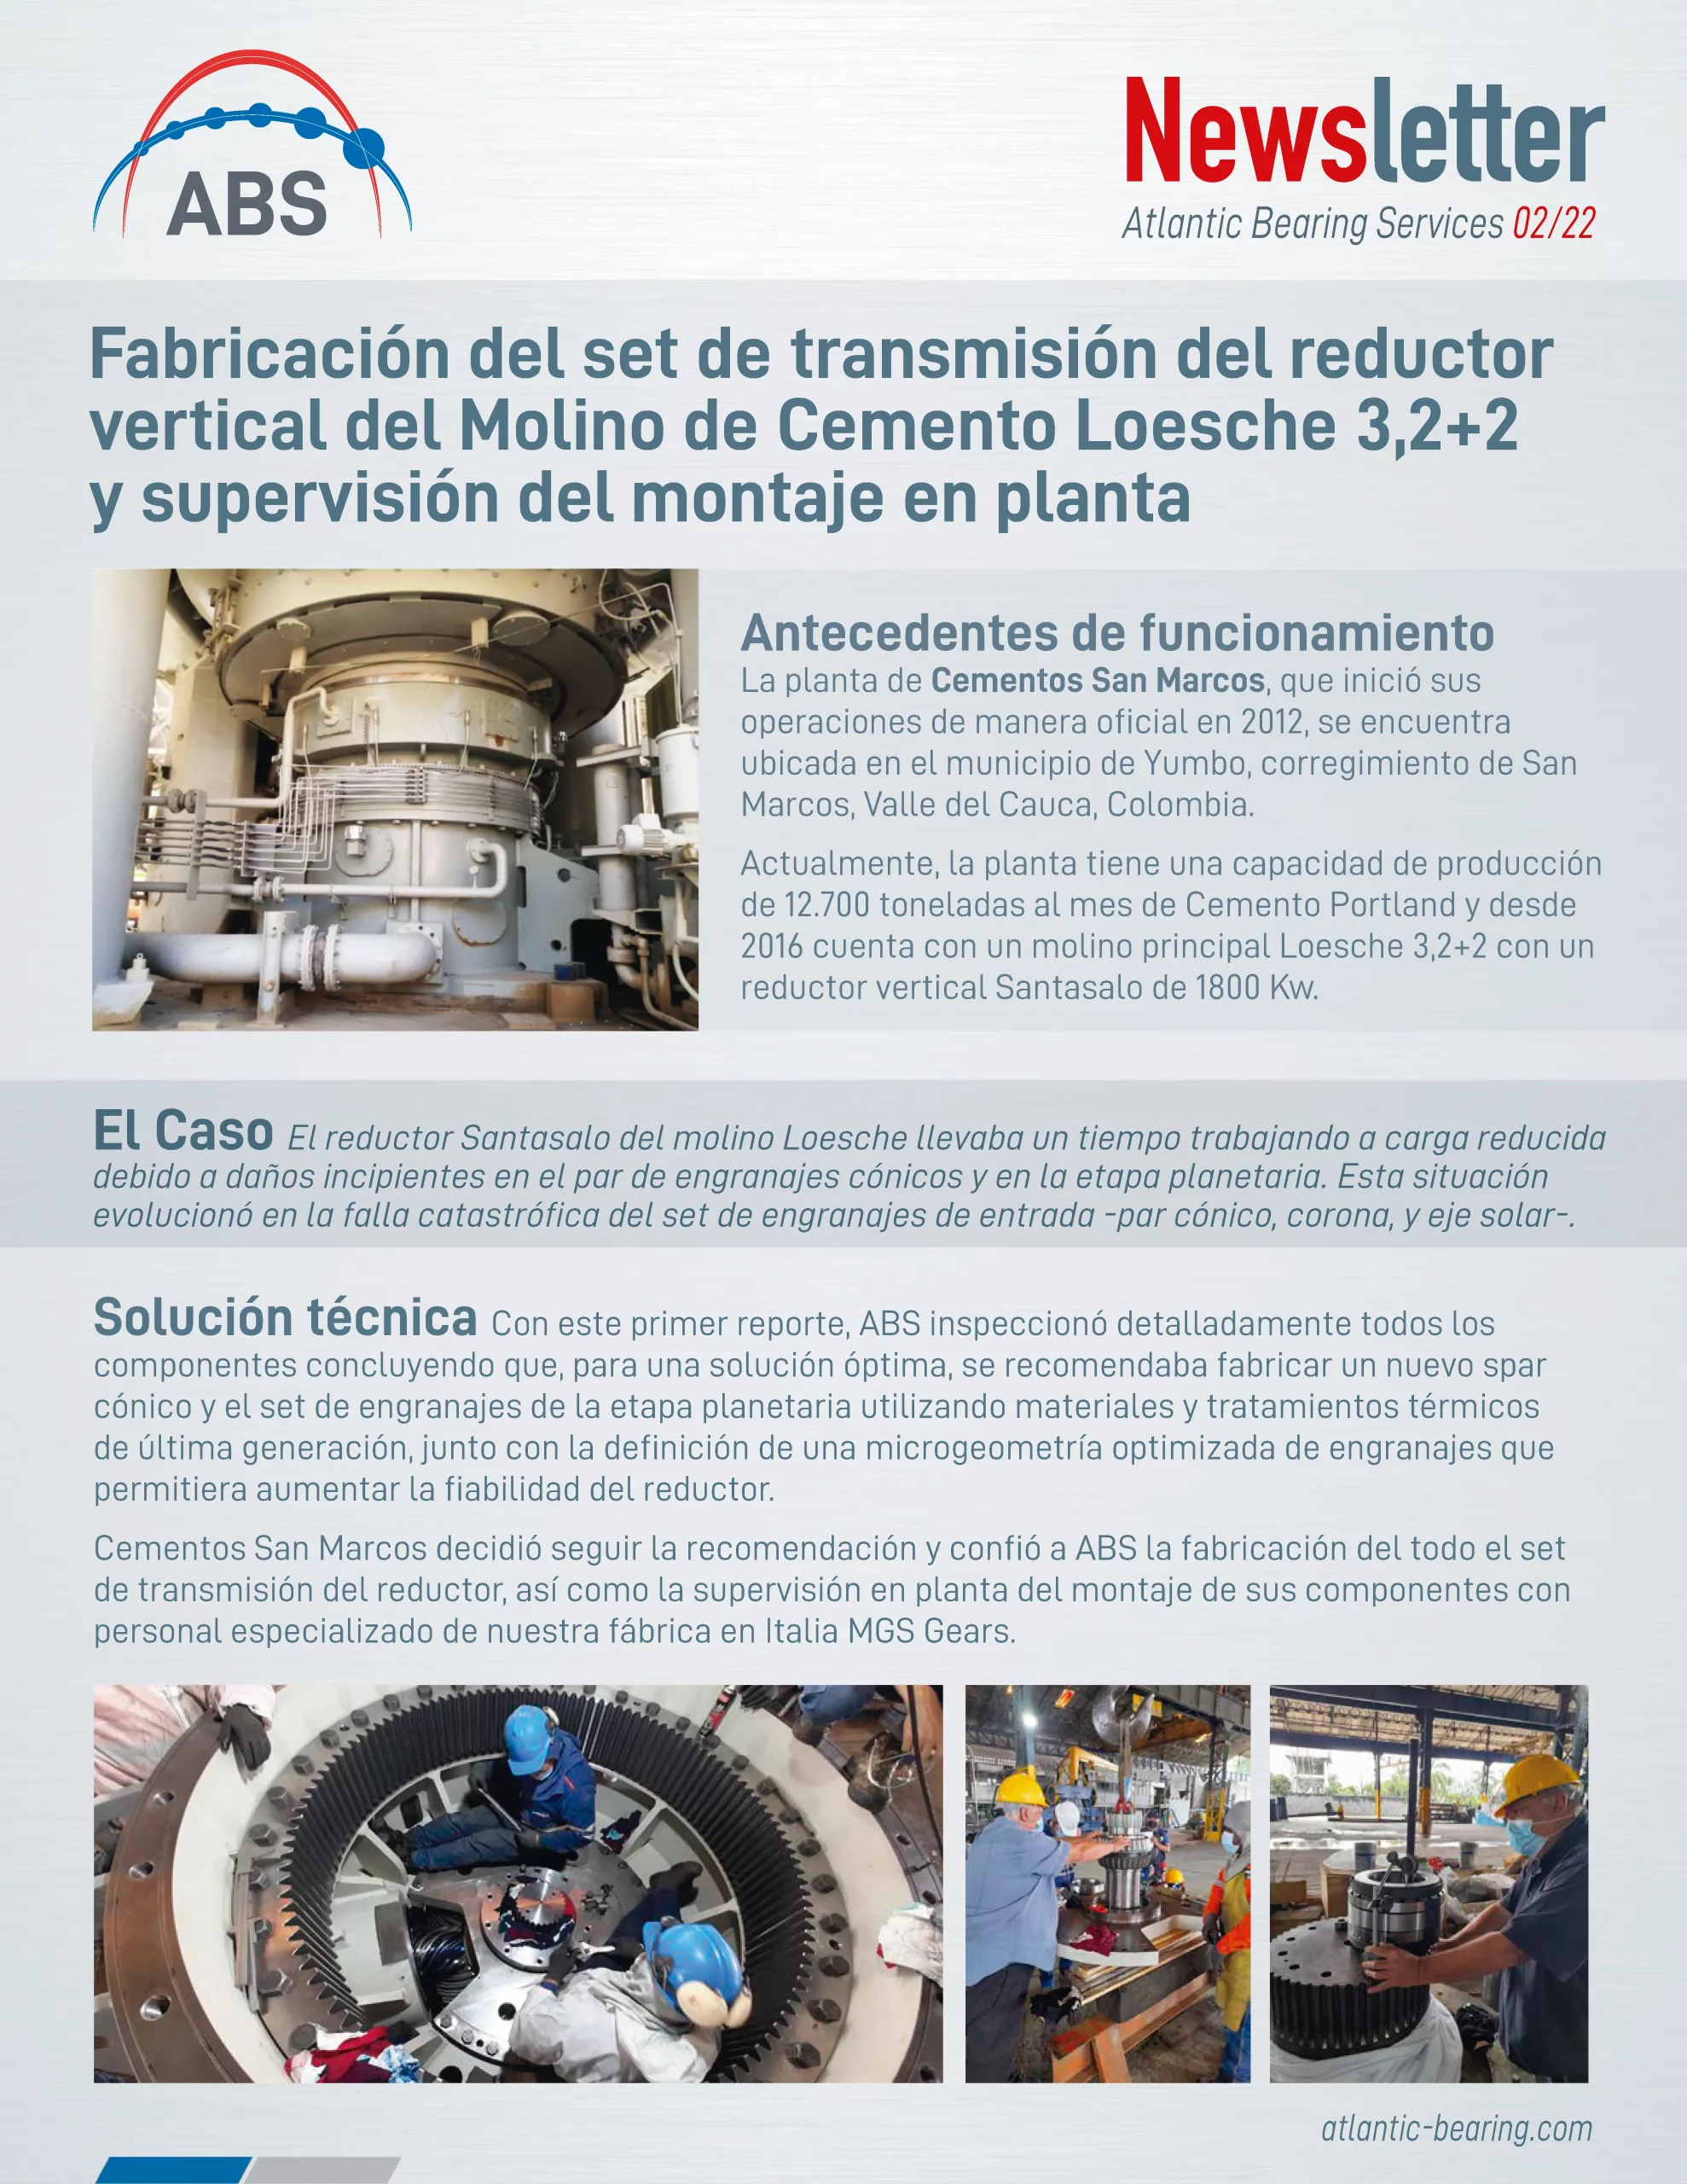 Fabricación del set de transmisión del reductor vertical del Molino de Cemento Loesche 3.2+2 y supervisión del montaje en planta